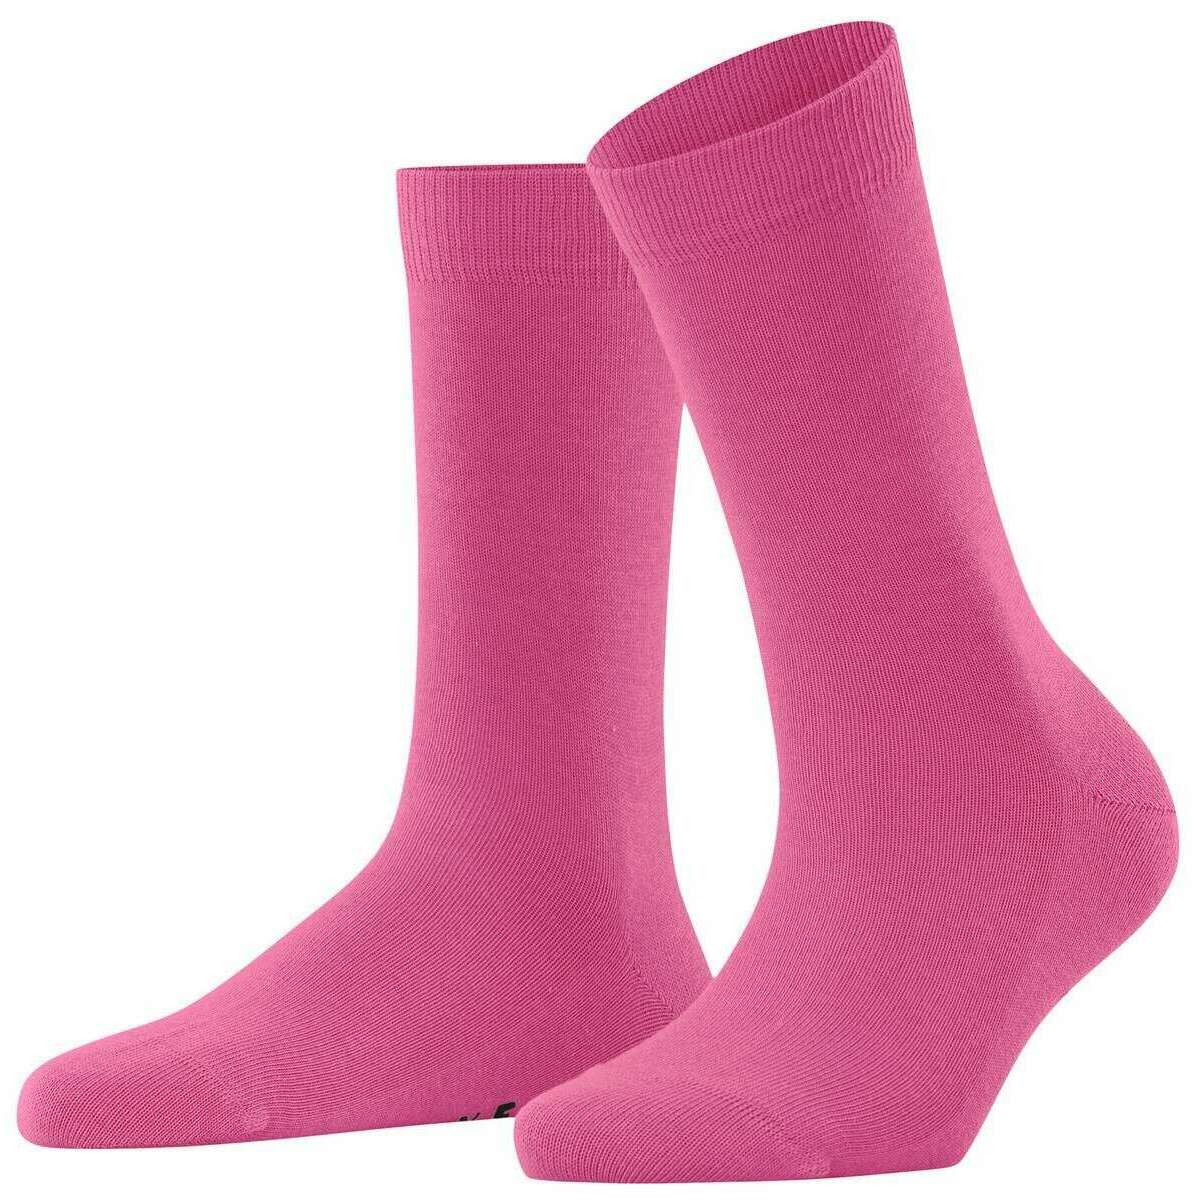 Falke Family Socks - Pink